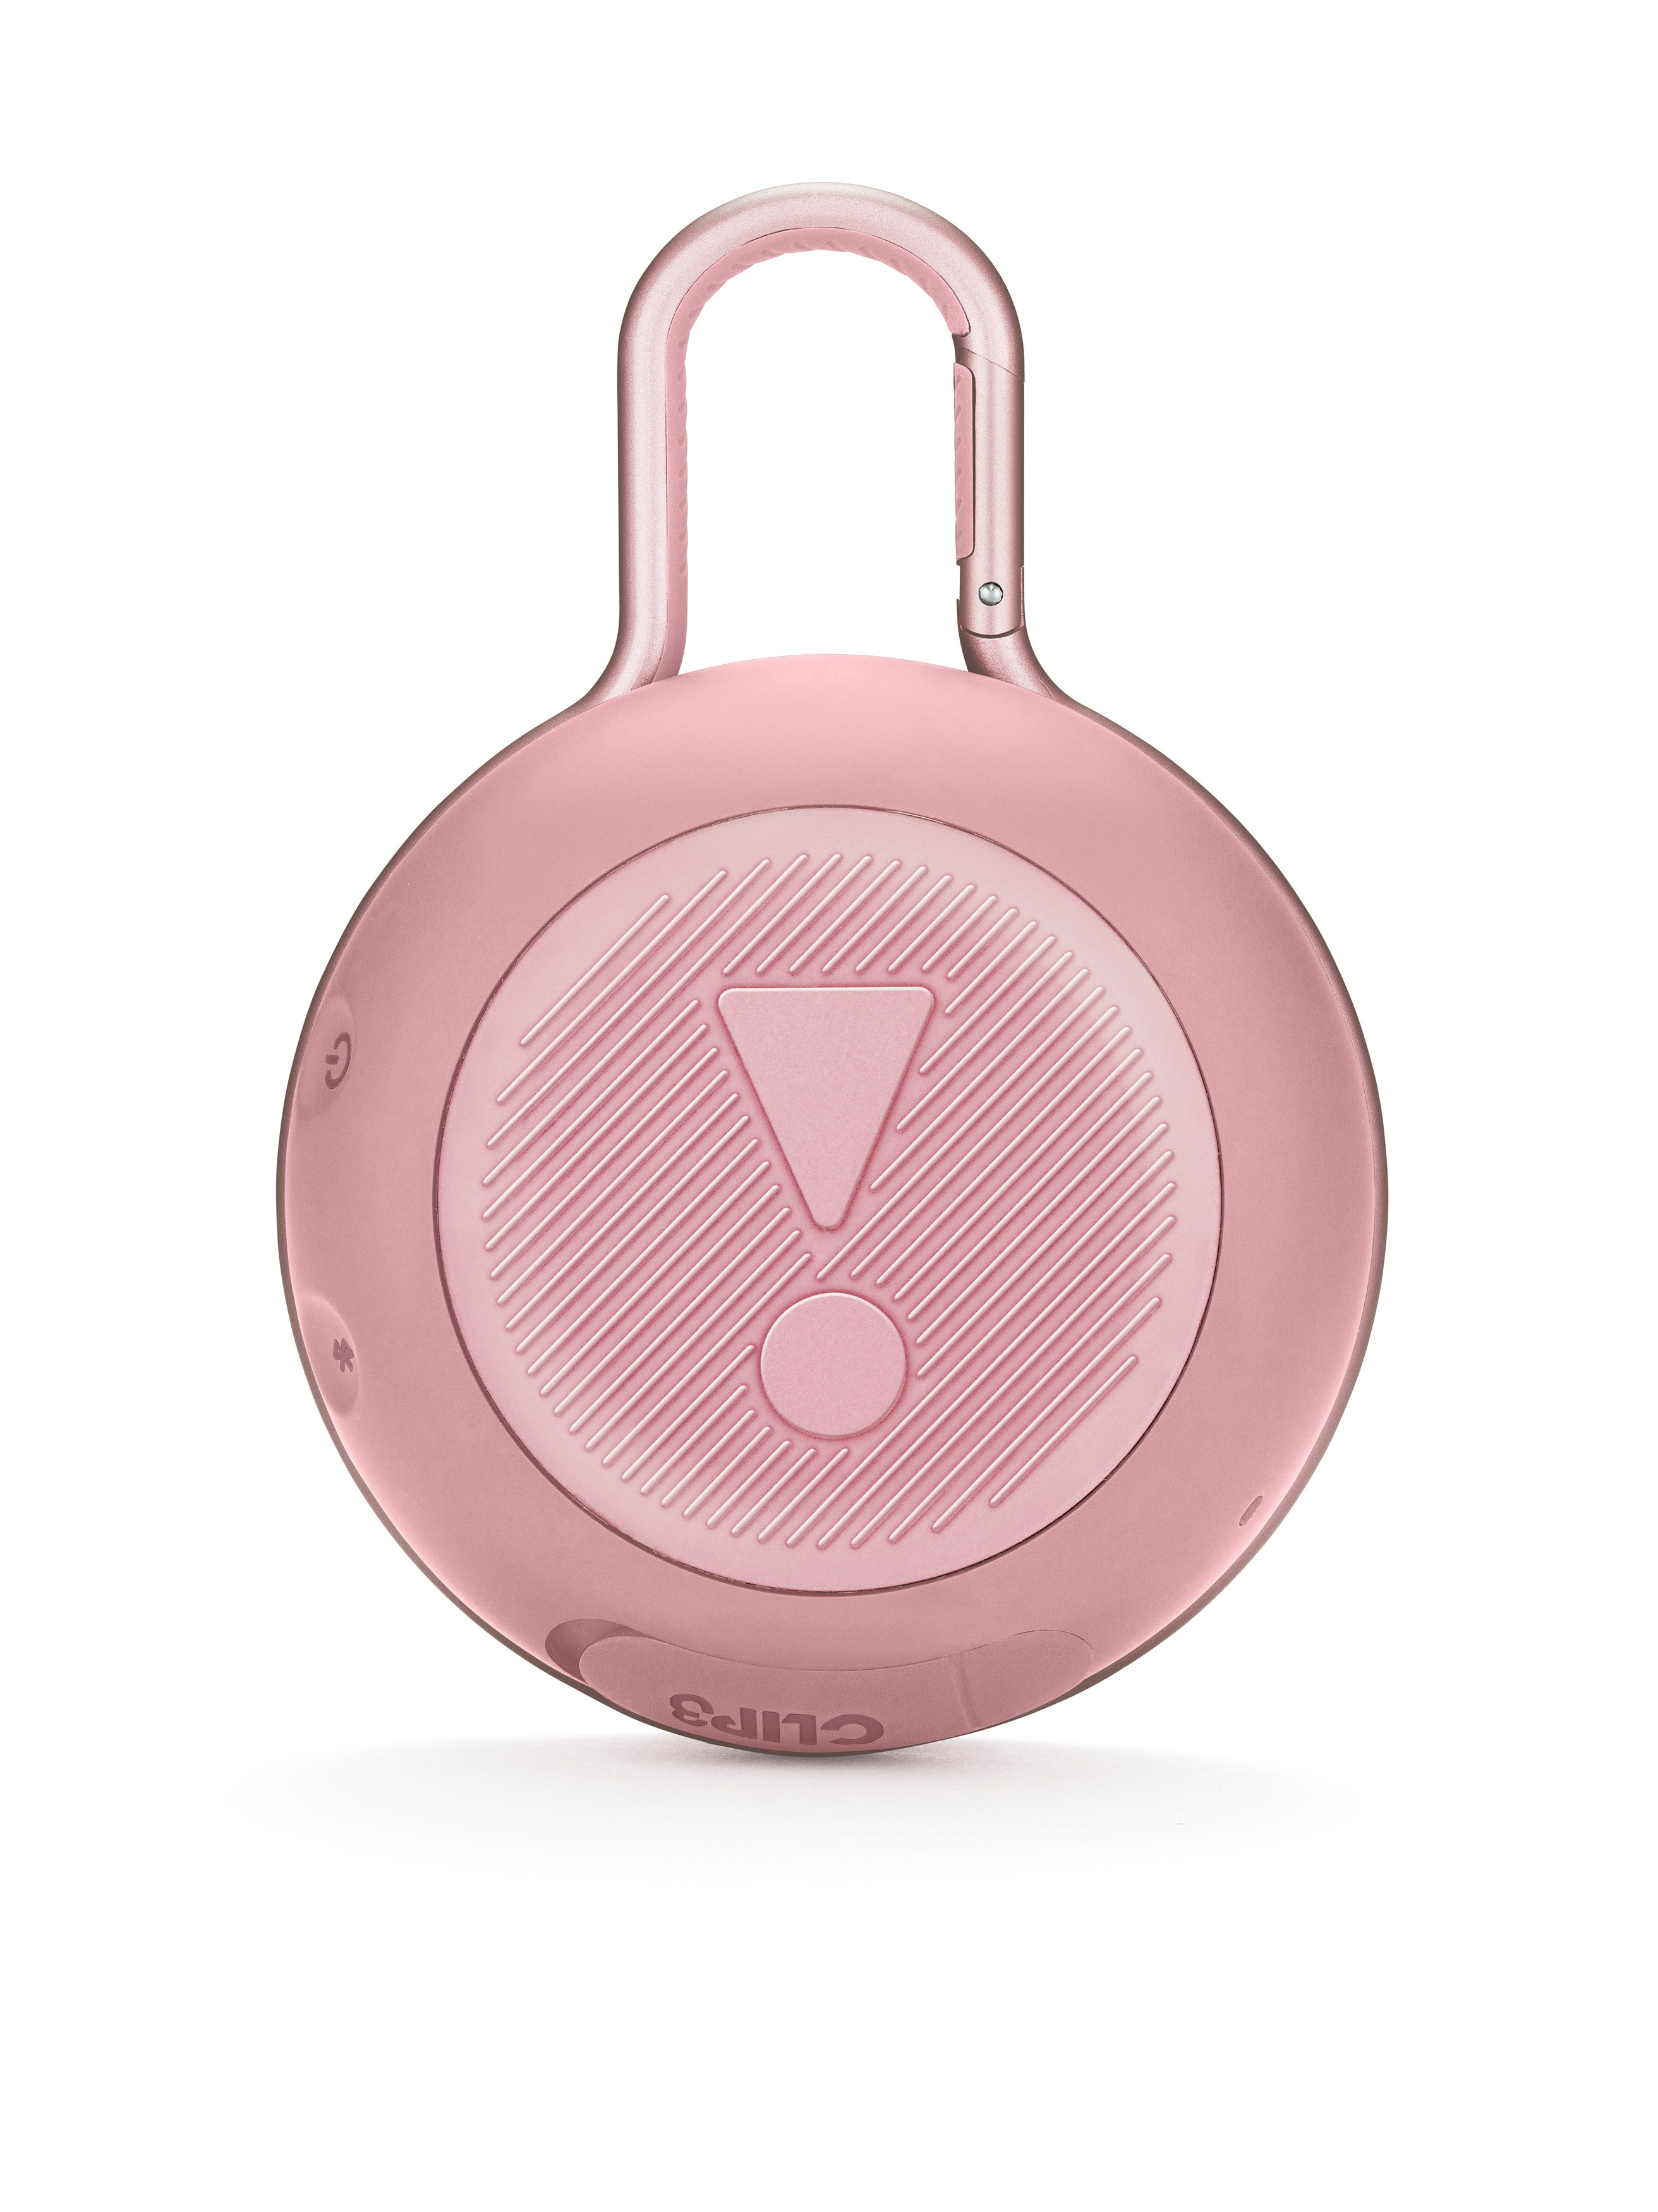 JBL Clip Lautsprecher, Wasserfest Pink, 3 Bluetooth